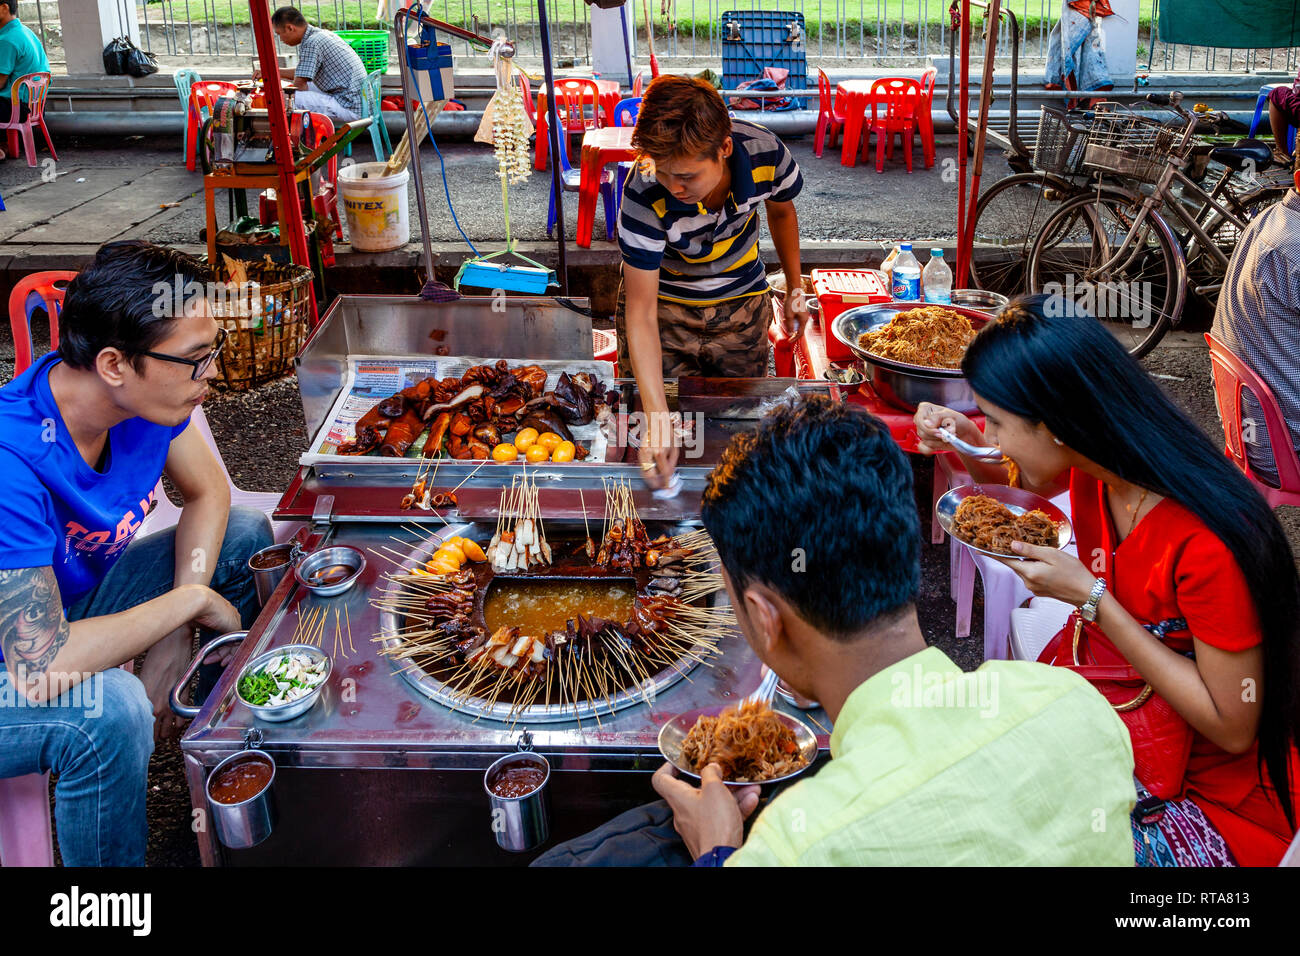 Young People Eating Street Food, Yangon, Myanmar Stock Photo